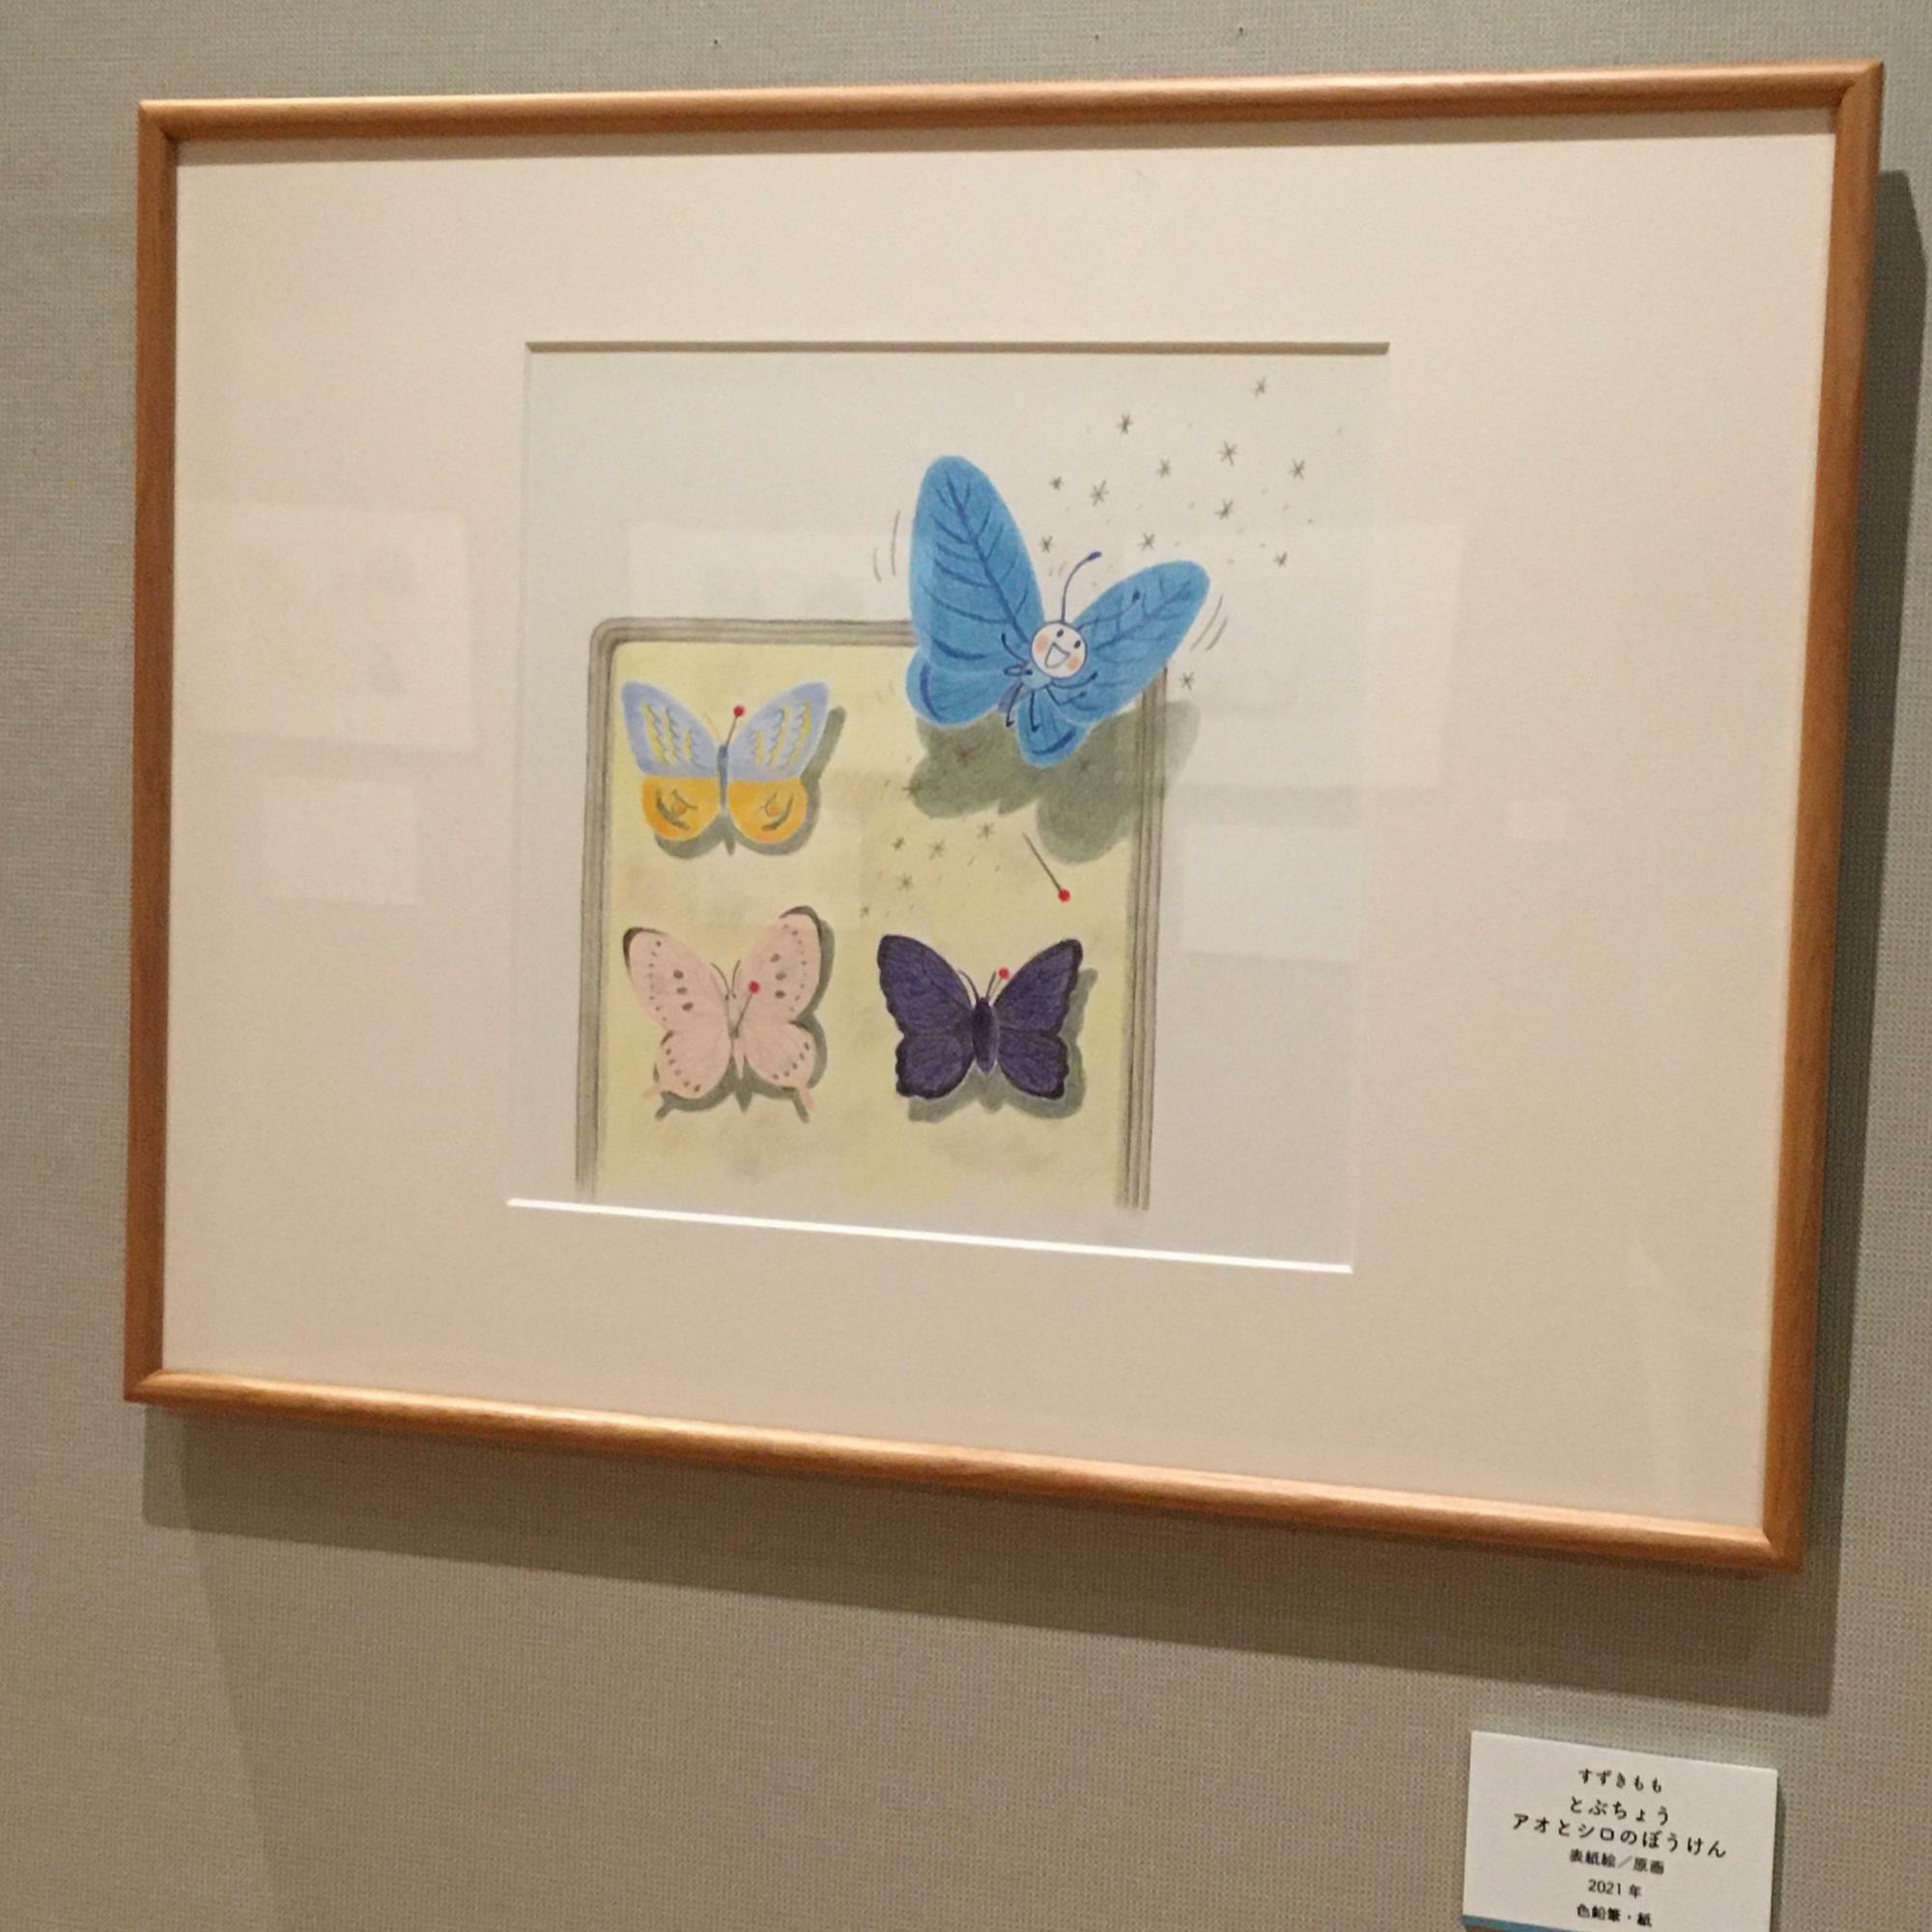 こちらは三岸の『飛ぶ蝶』をオマージュし、モモさんらしい表現で描いた作品